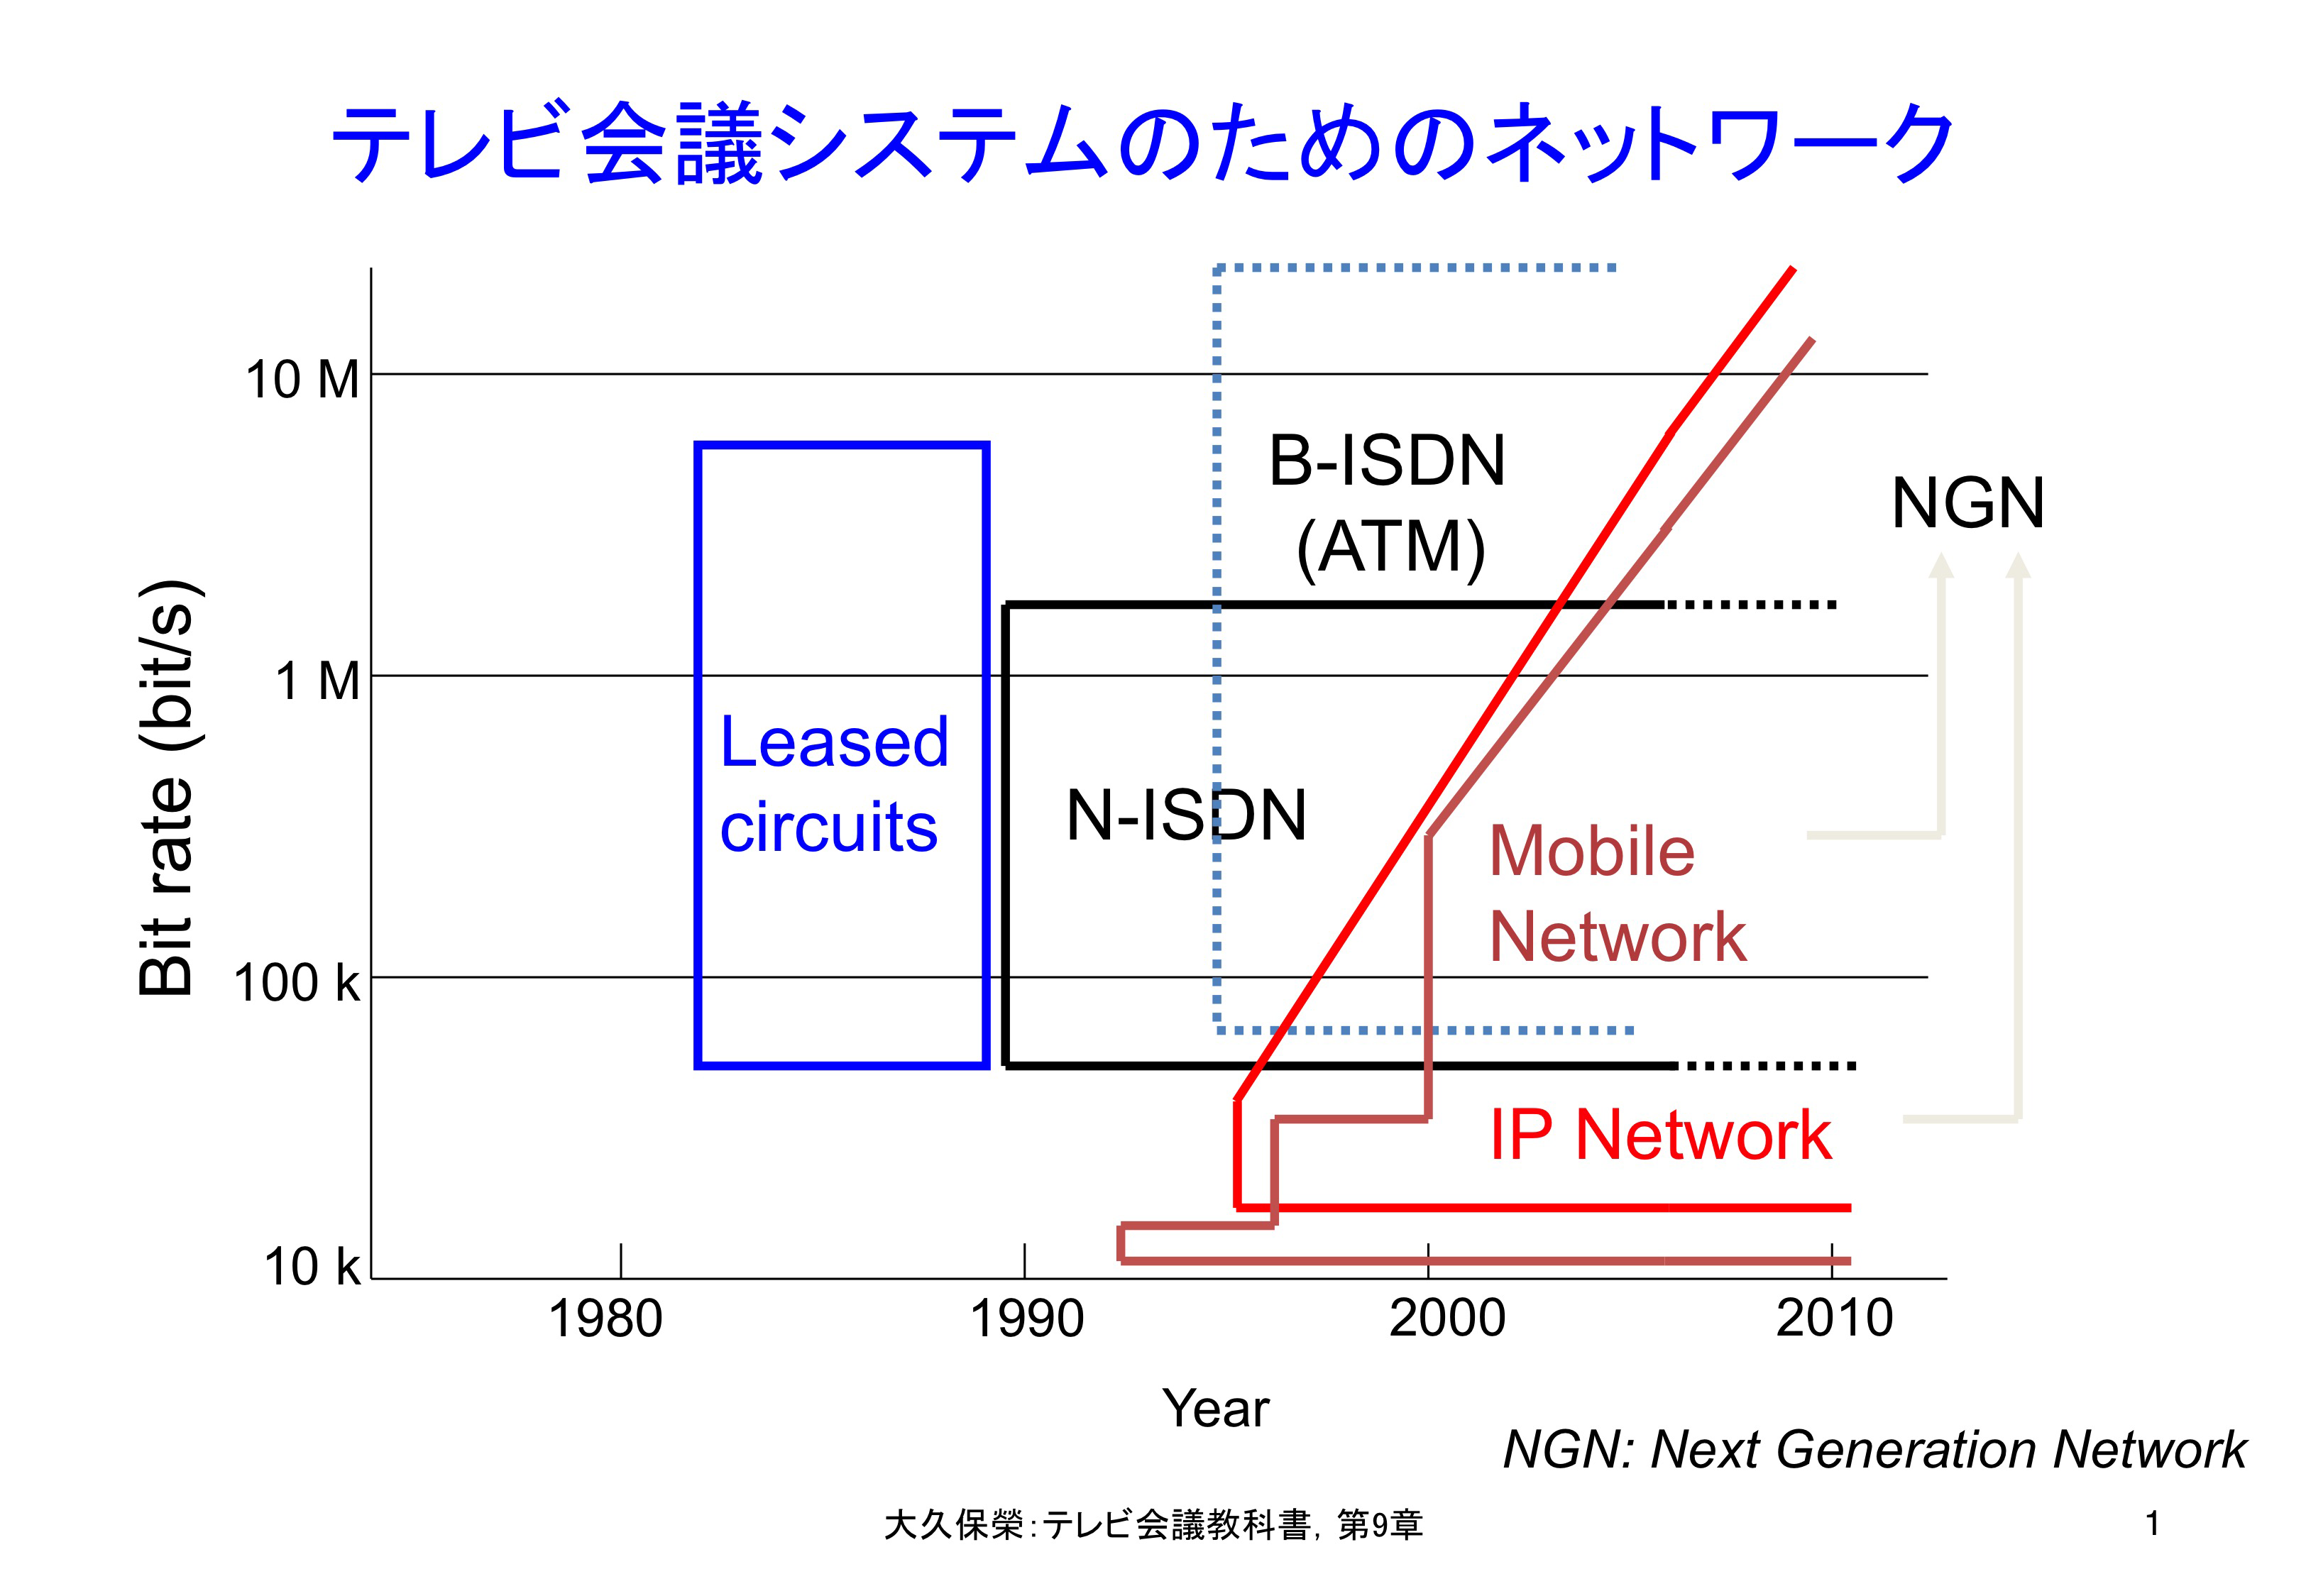 図9-1 テレビ会議システムのためのネットワーク